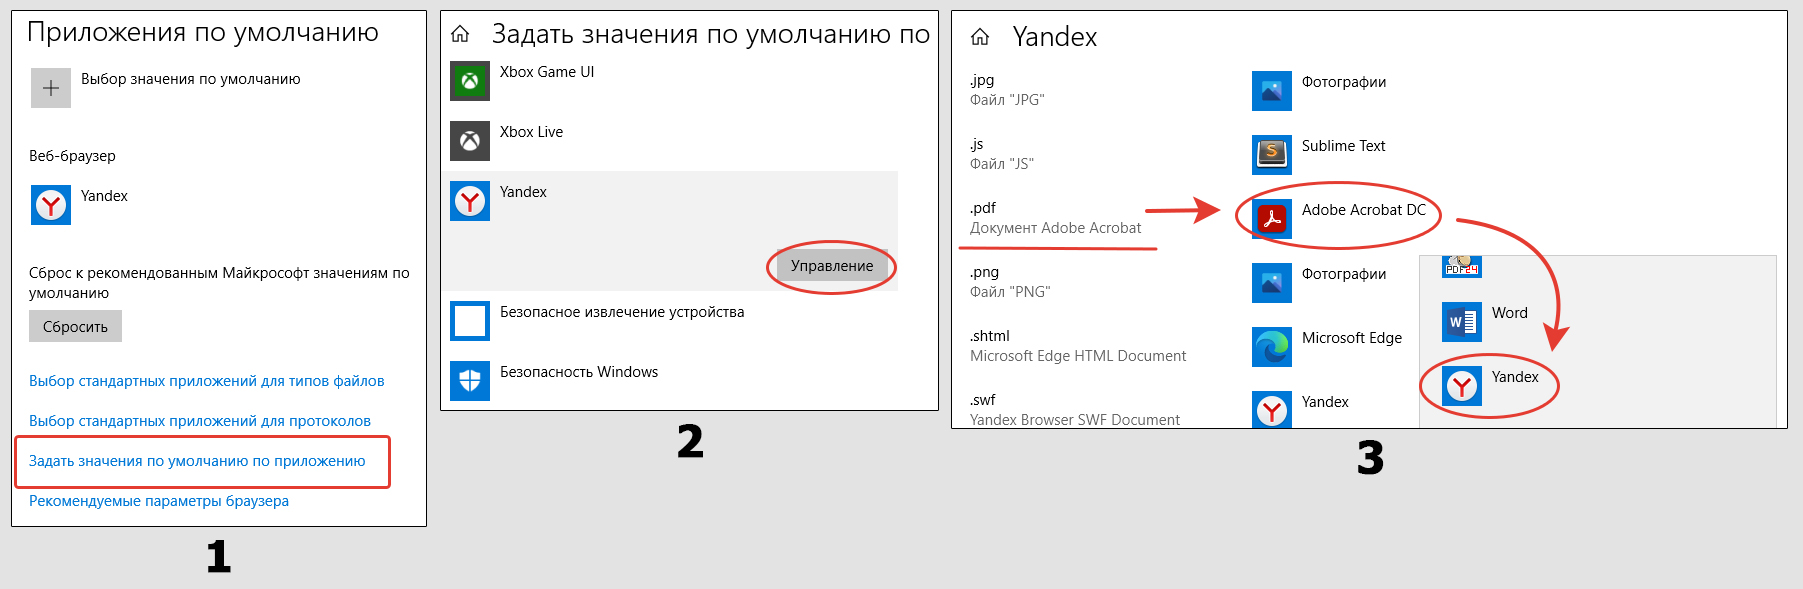 Настройка соответствия типов файлов и программ в Windows 10.